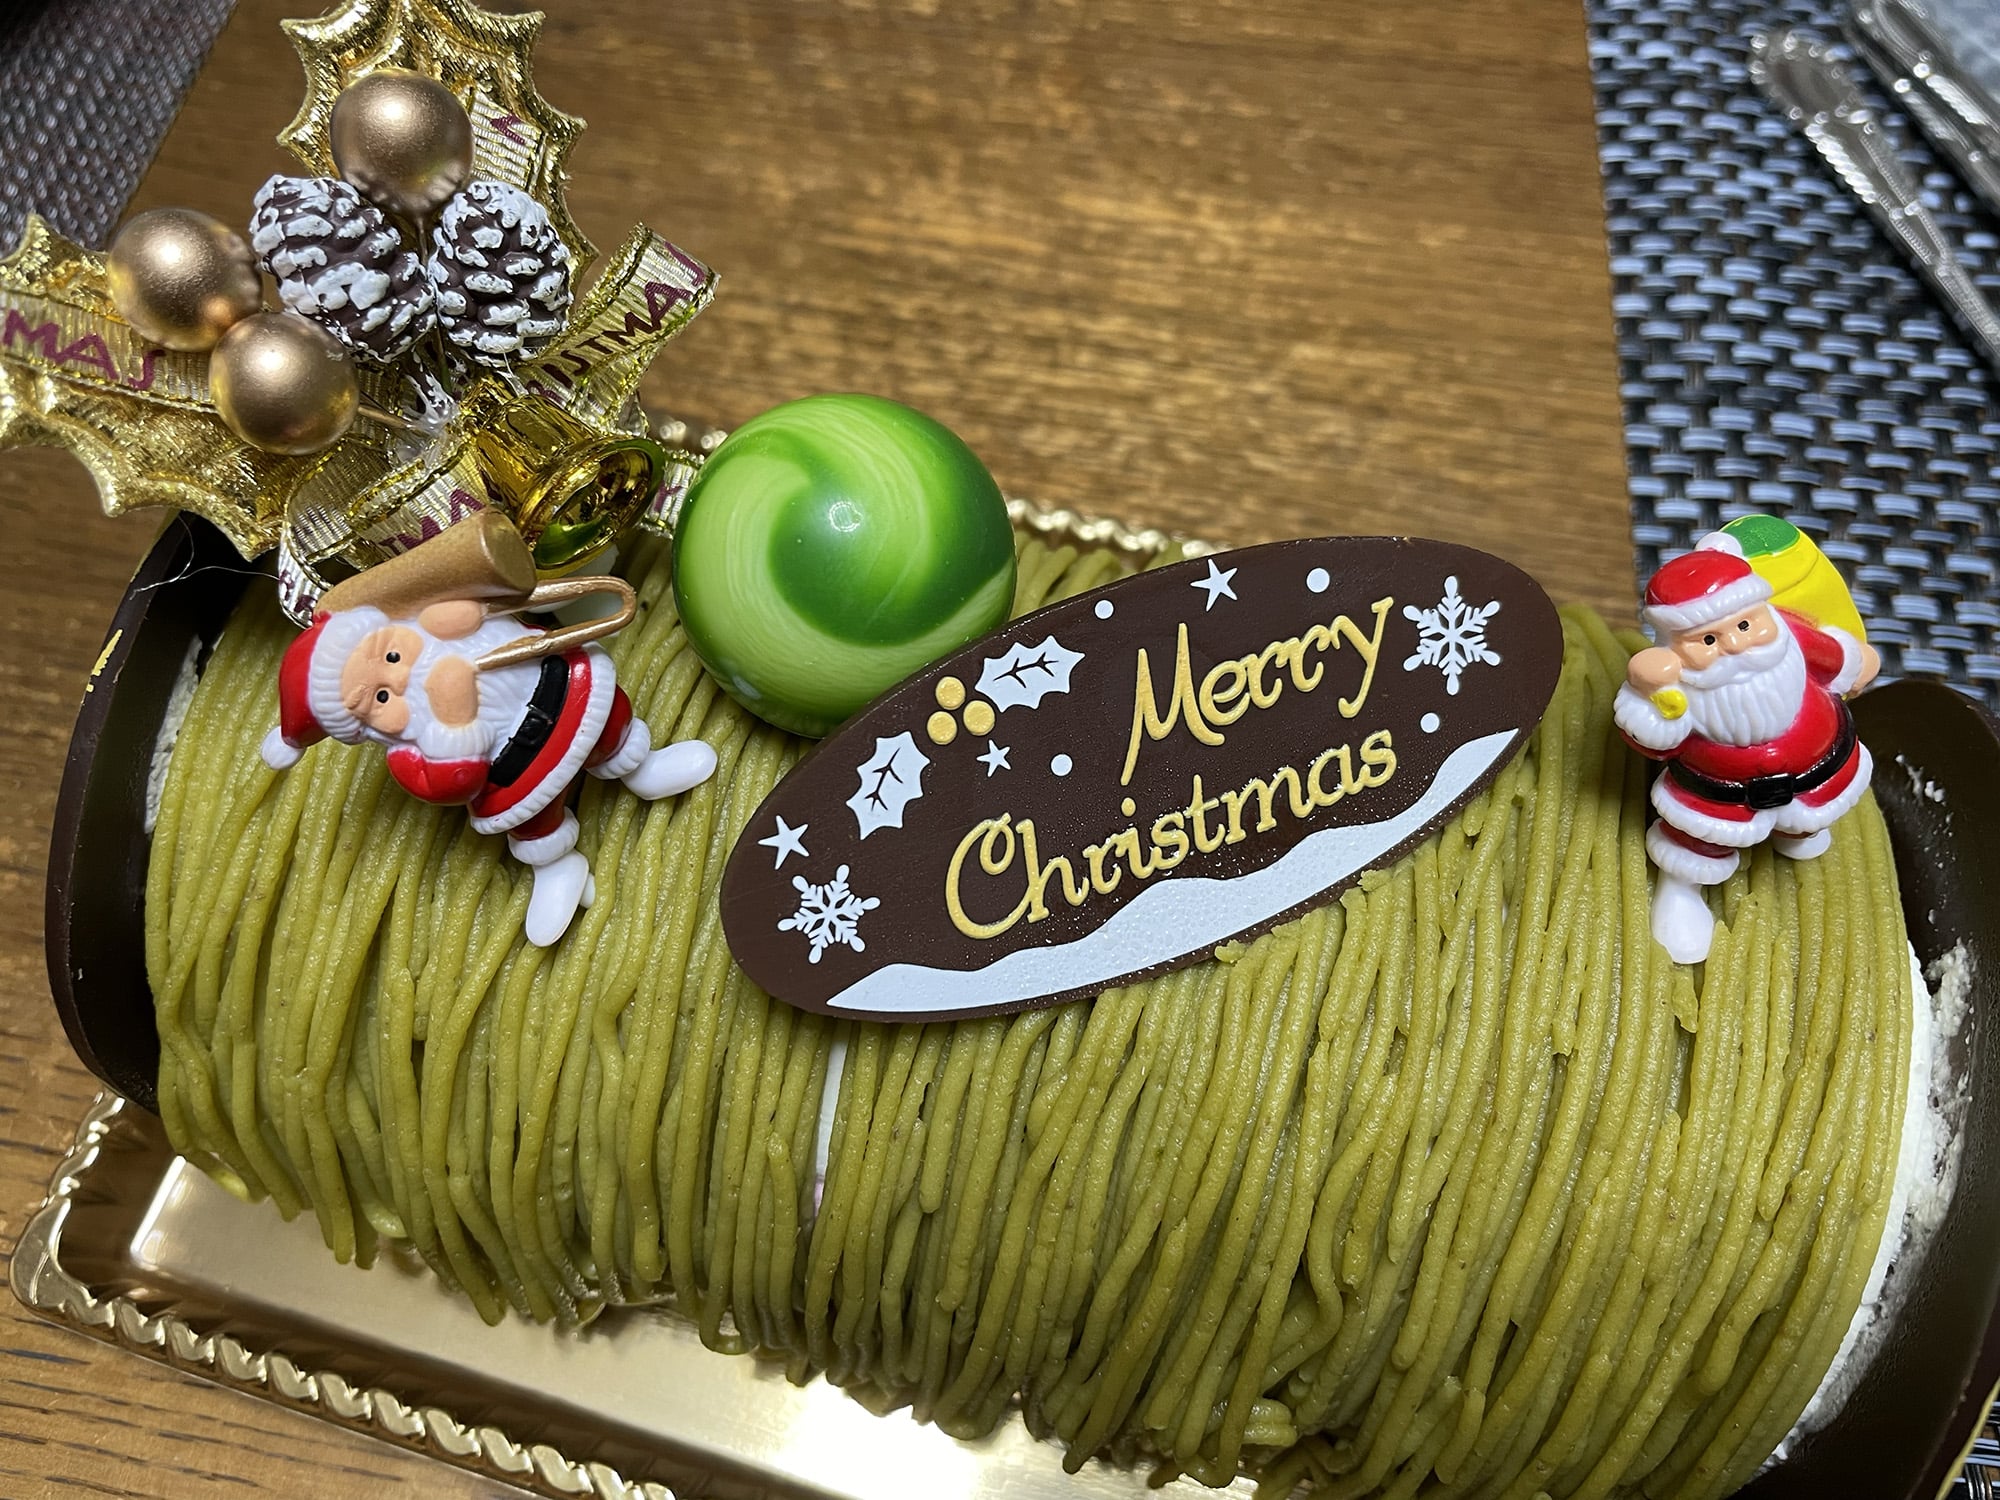 クリスマスケーキ「ピスタチオノエル」